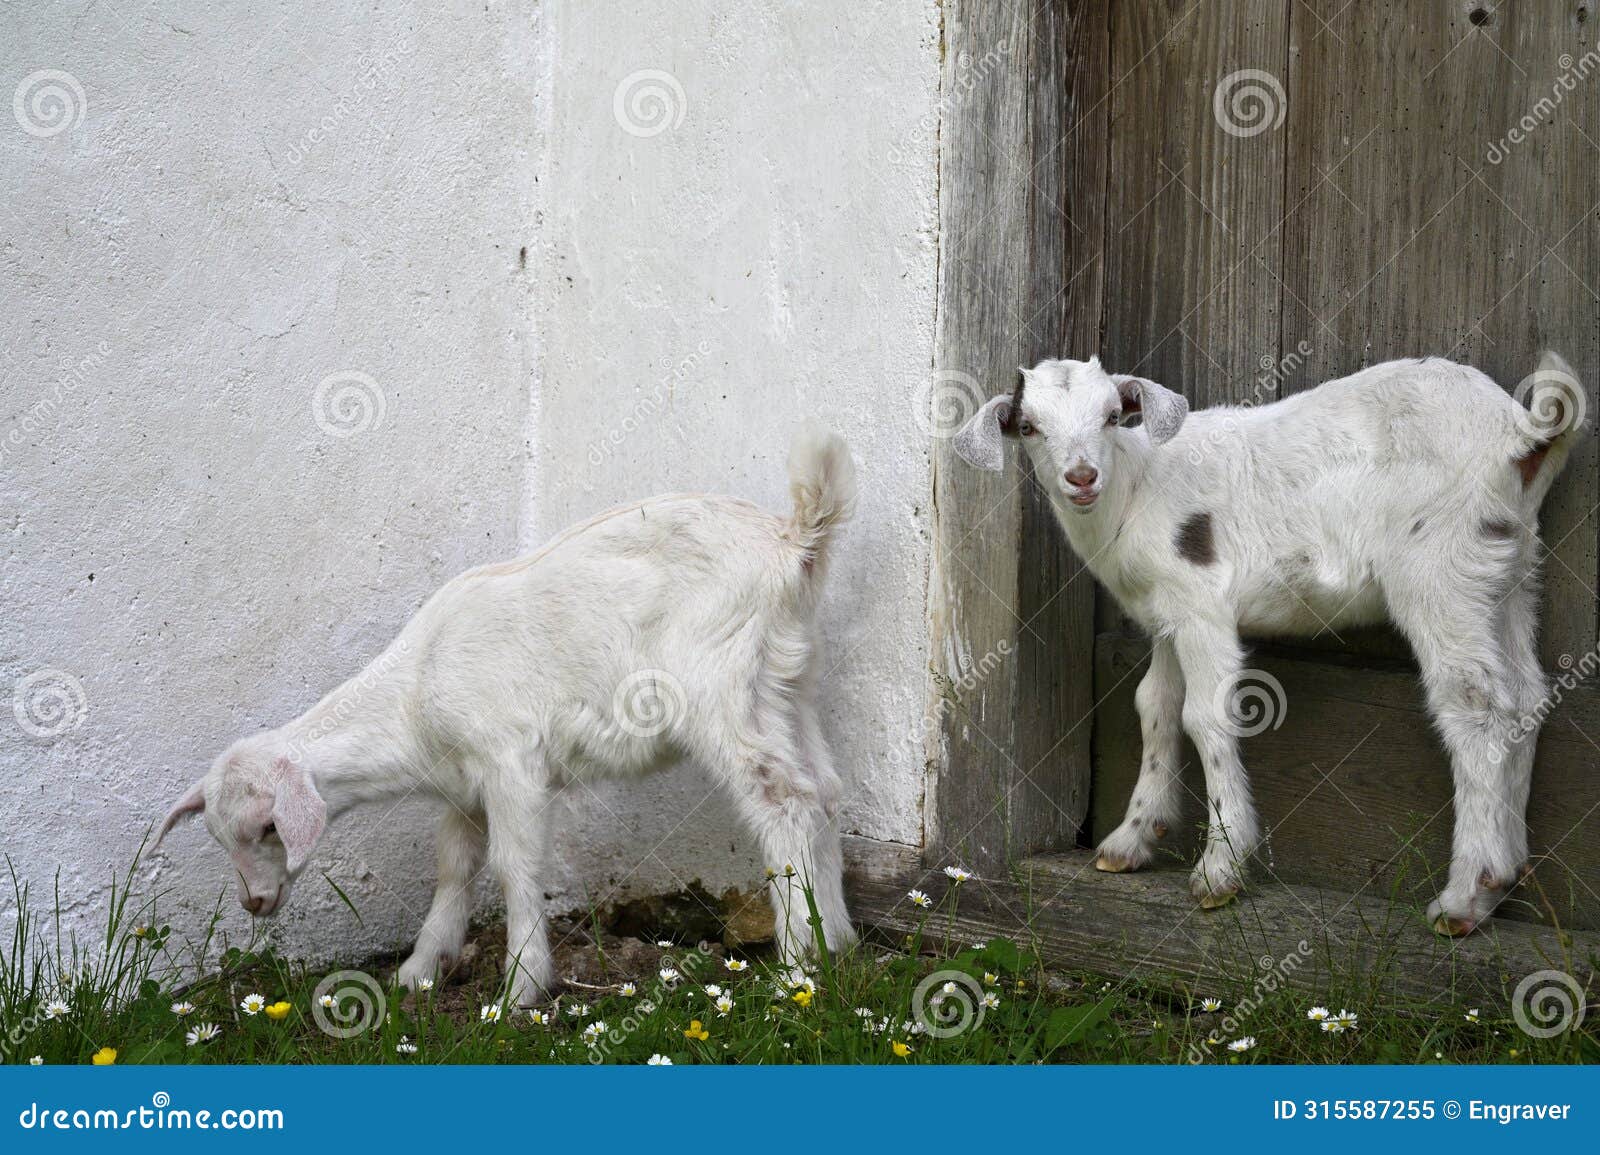 baby goats white furry animals farm